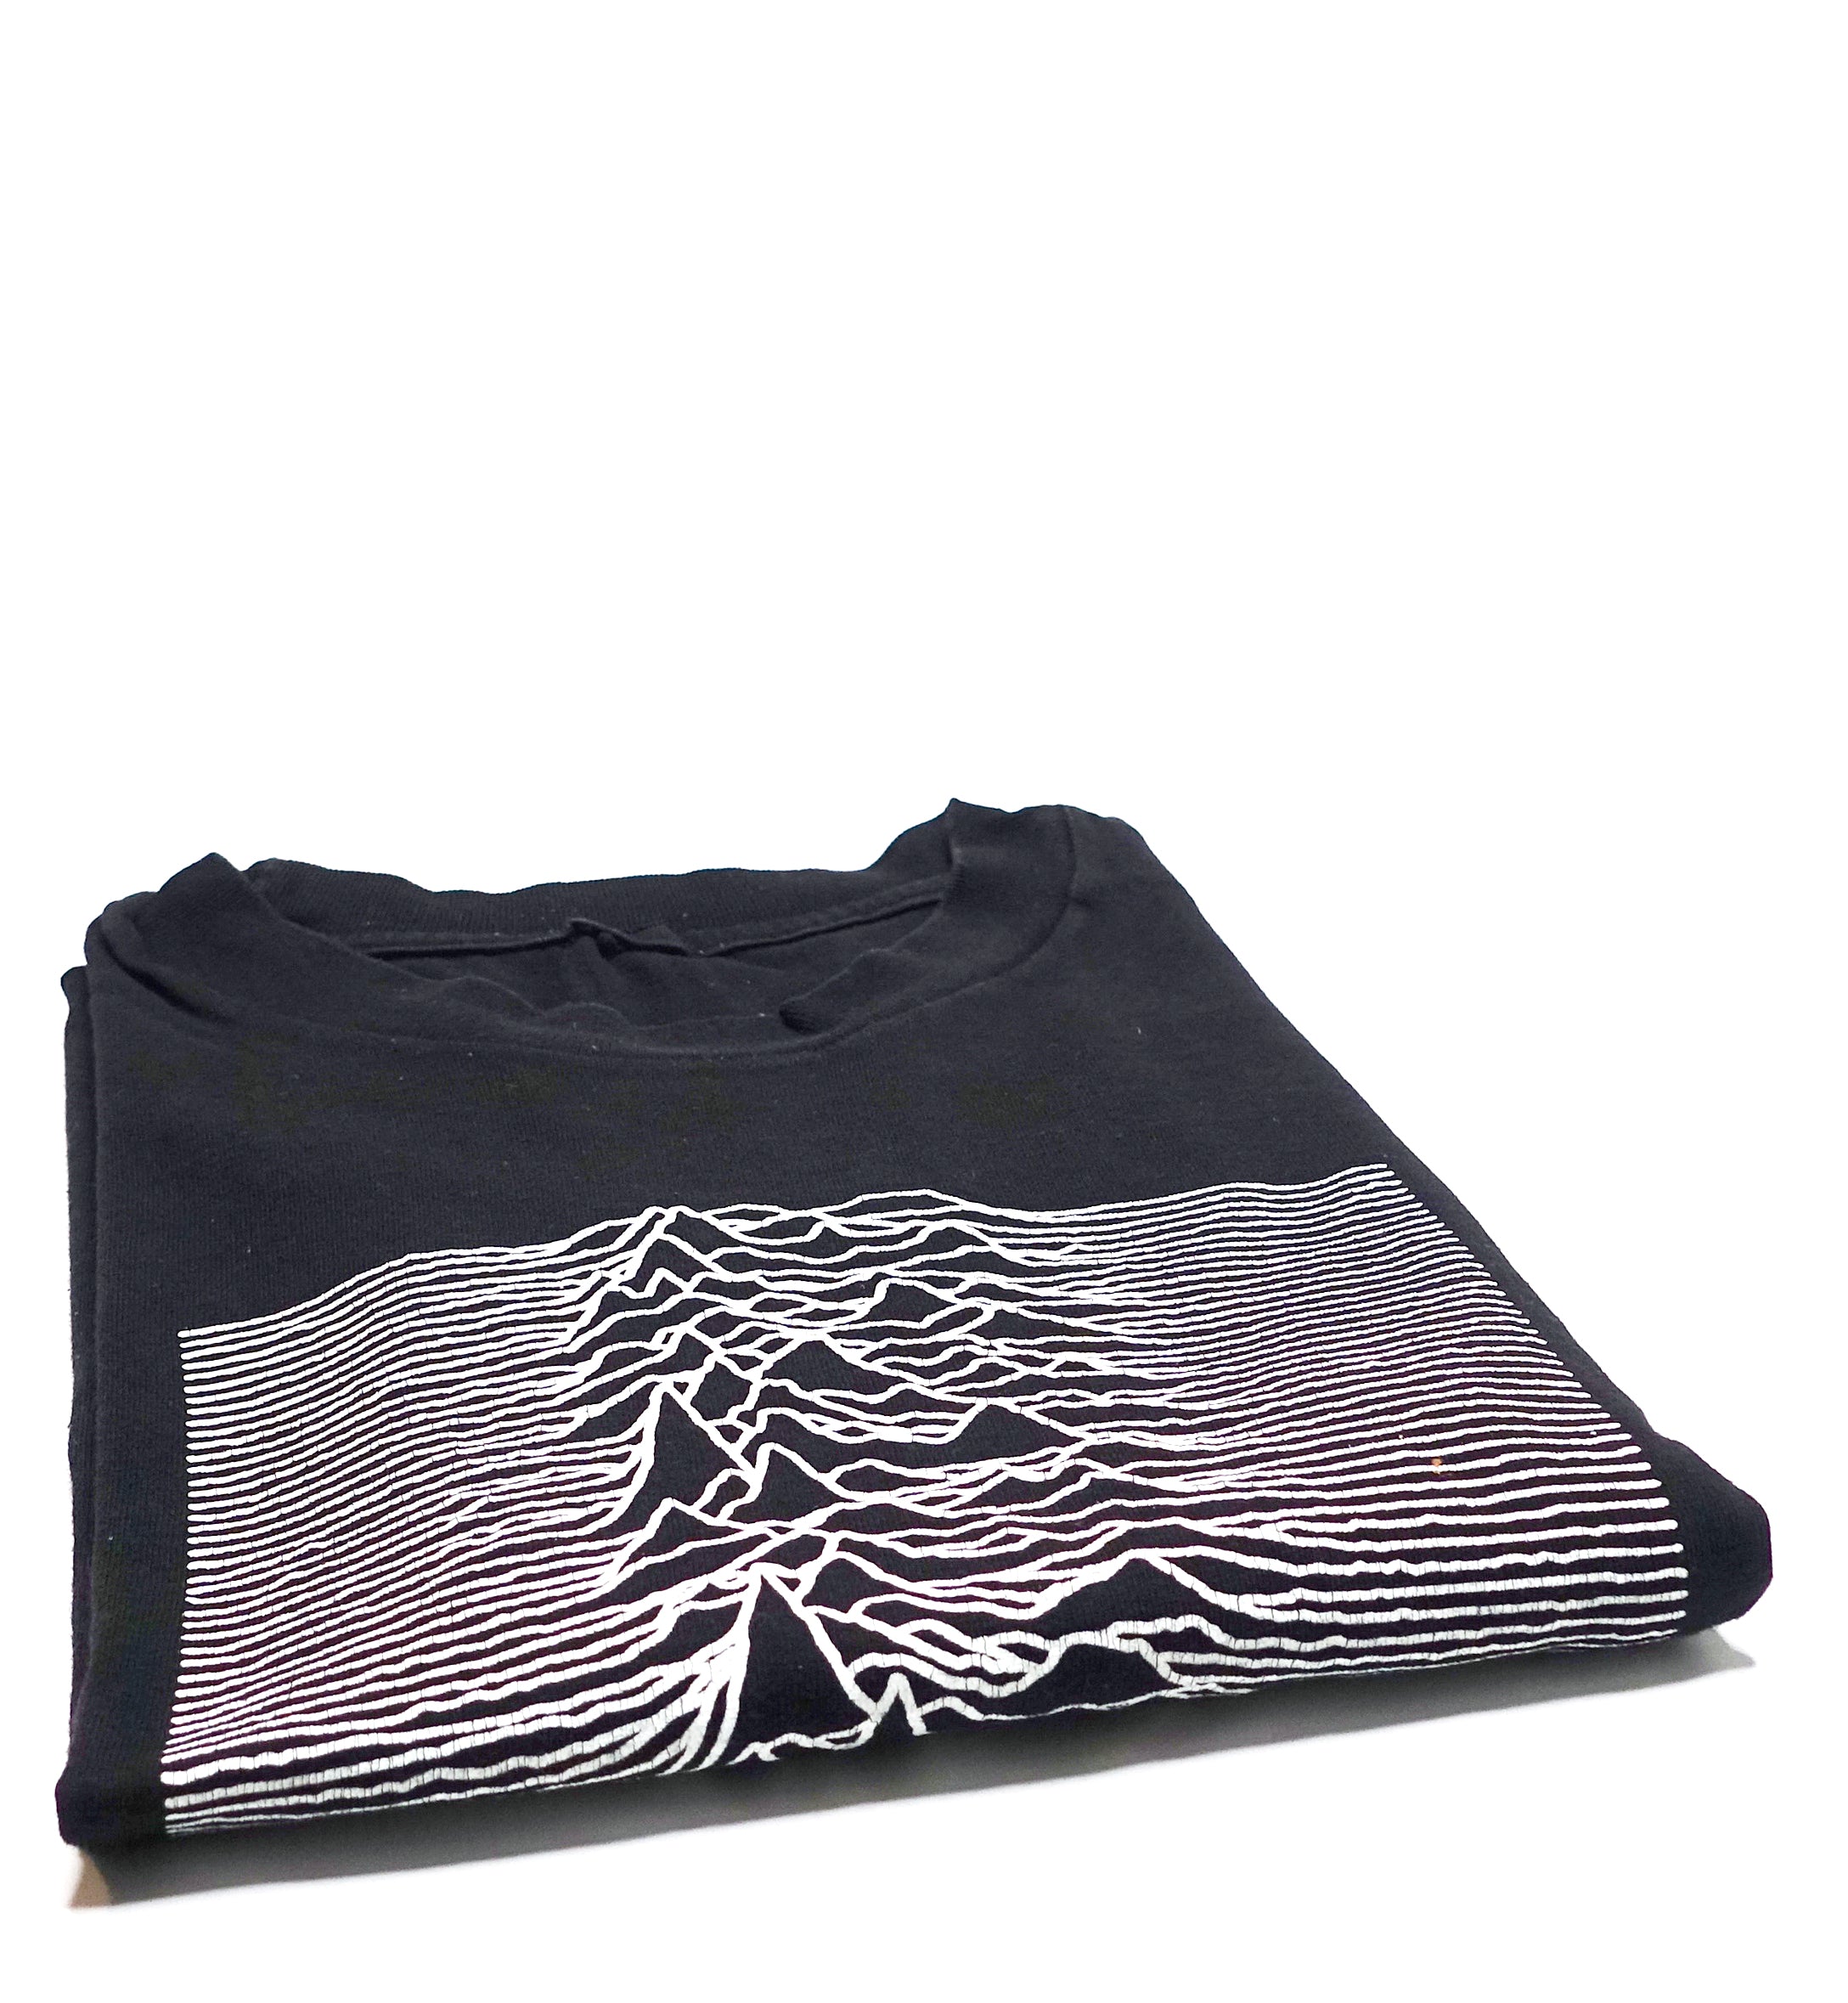 Joy Division - Unknown Pleasures 90's Shirt Size XL